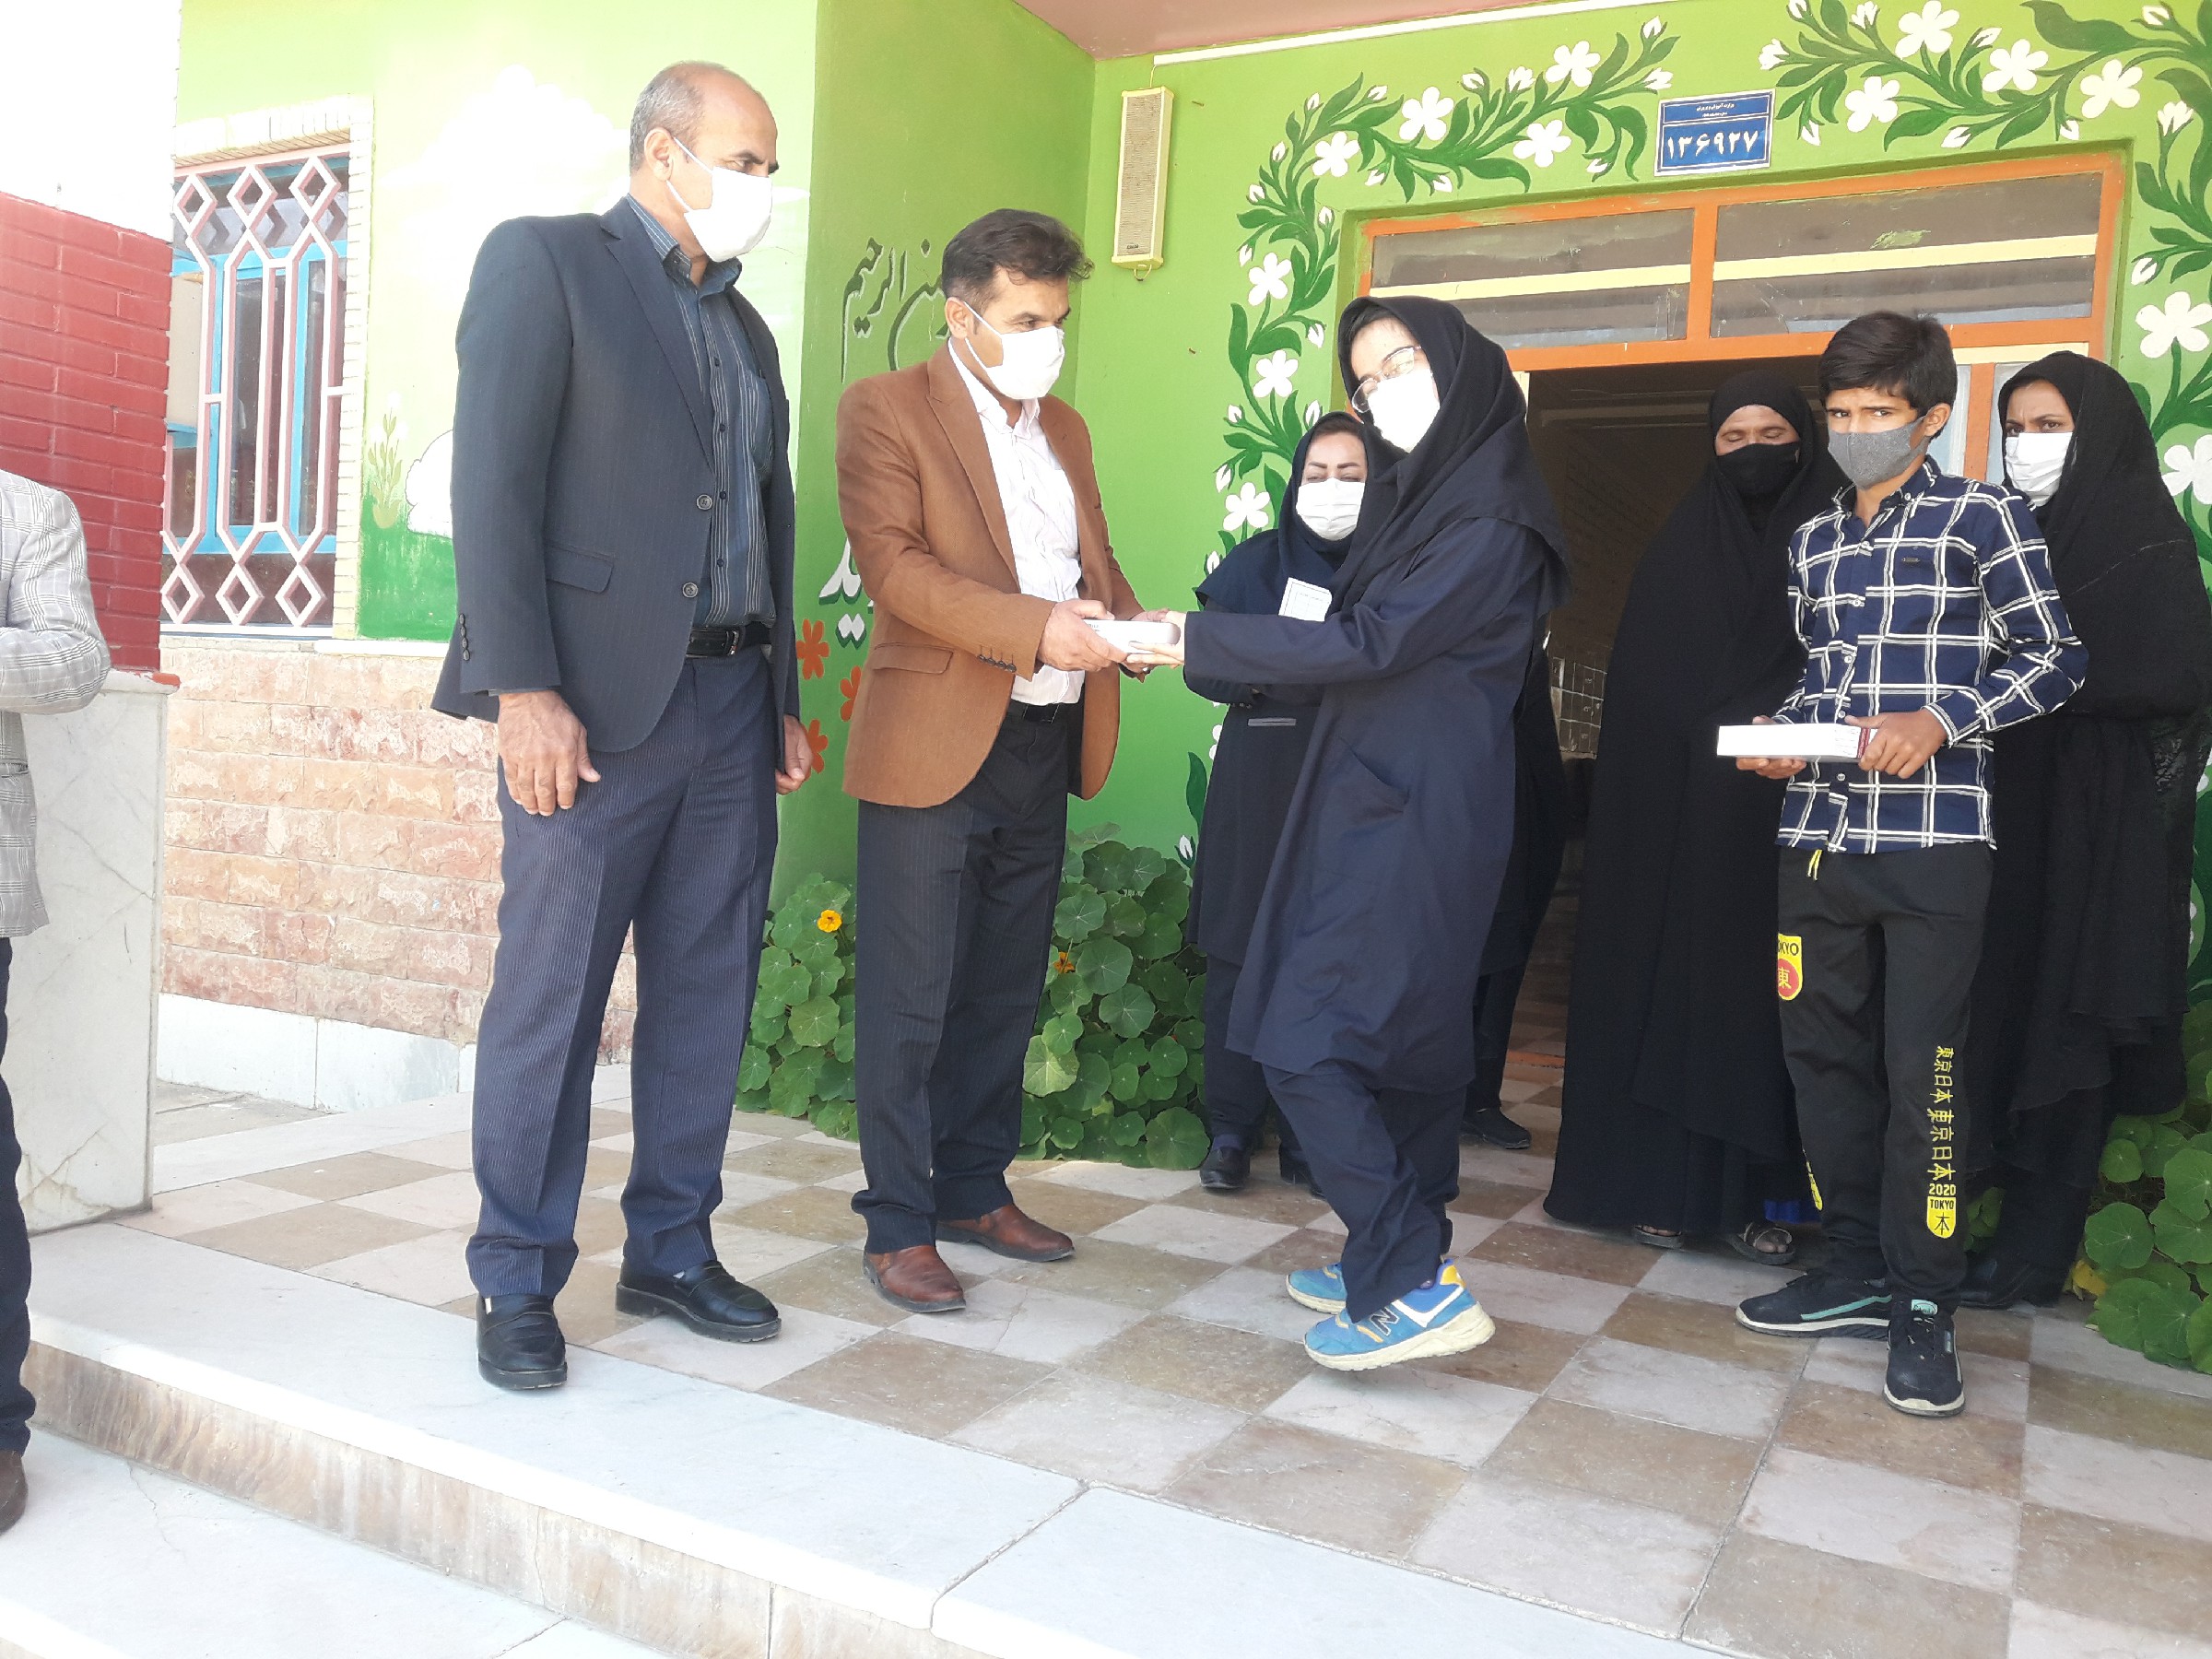 اهدای چند دستگاه تبلت به دانش آموزان مرکز آموزشی لادن شهرستان بهمئی + عکس